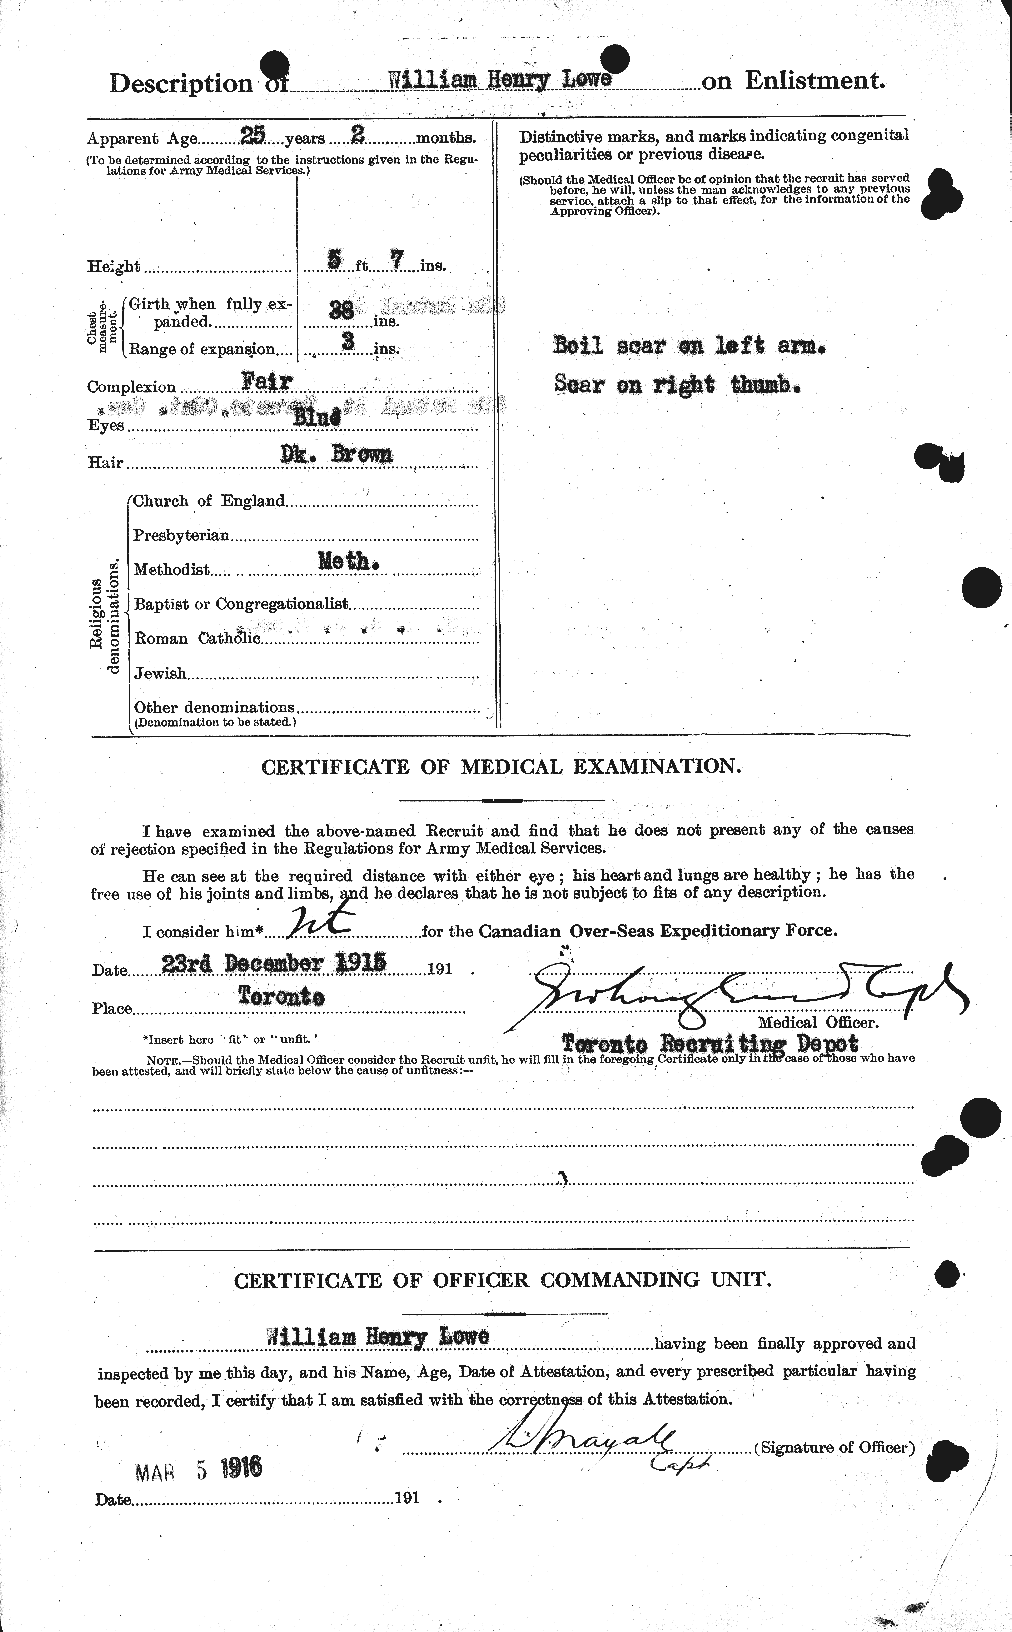 Dossiers du Personnel de la Première Guerre mondiale - CEC 471231b